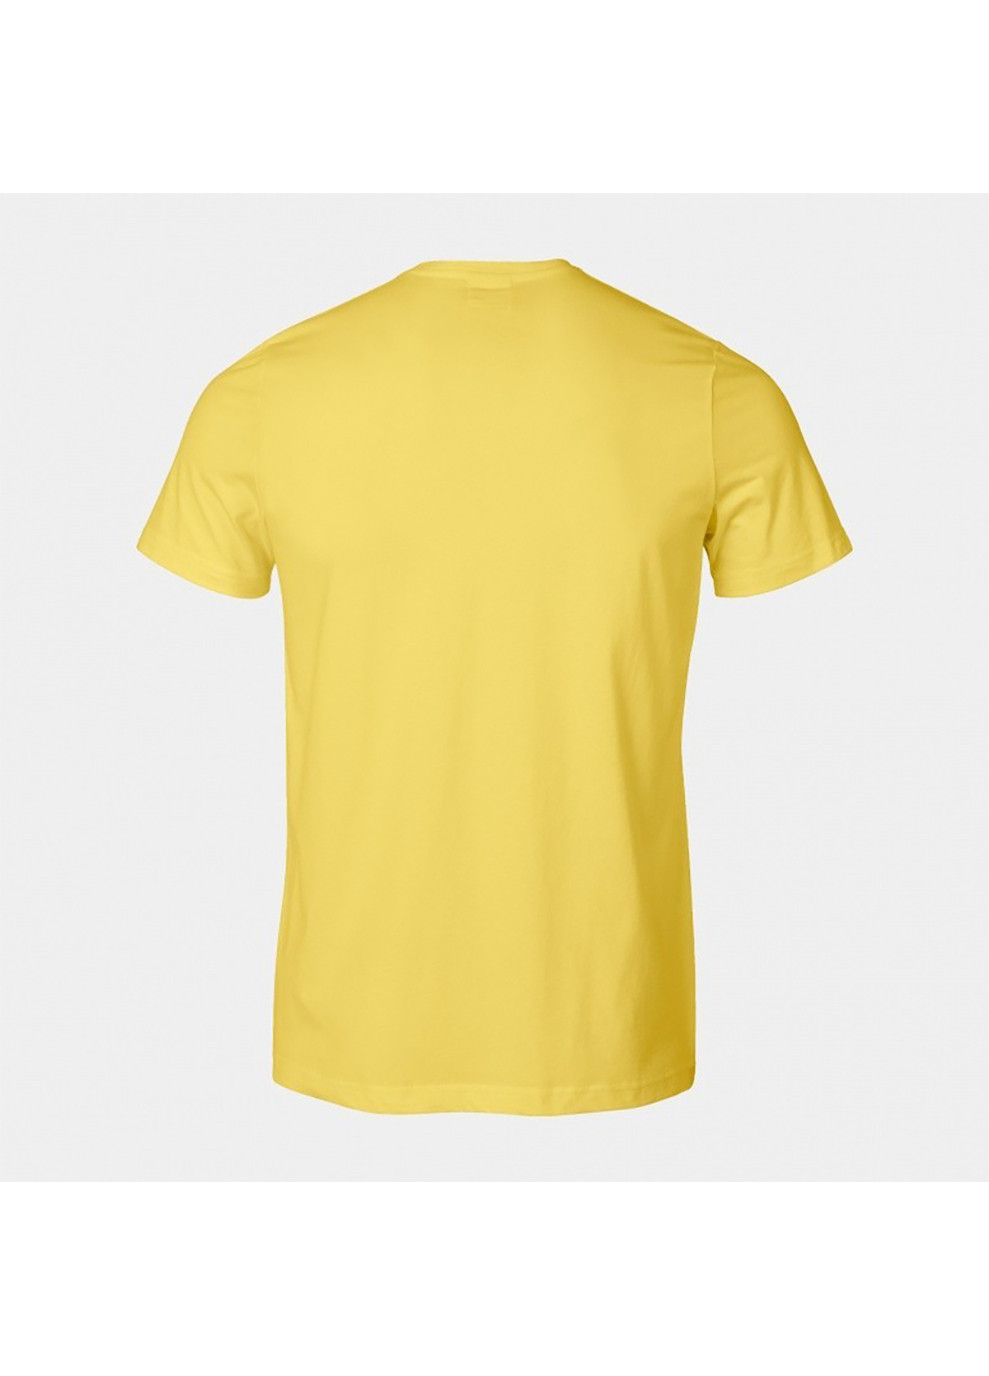 Желтая футболка versalles short sleeve t-shirt жёлтый Joma